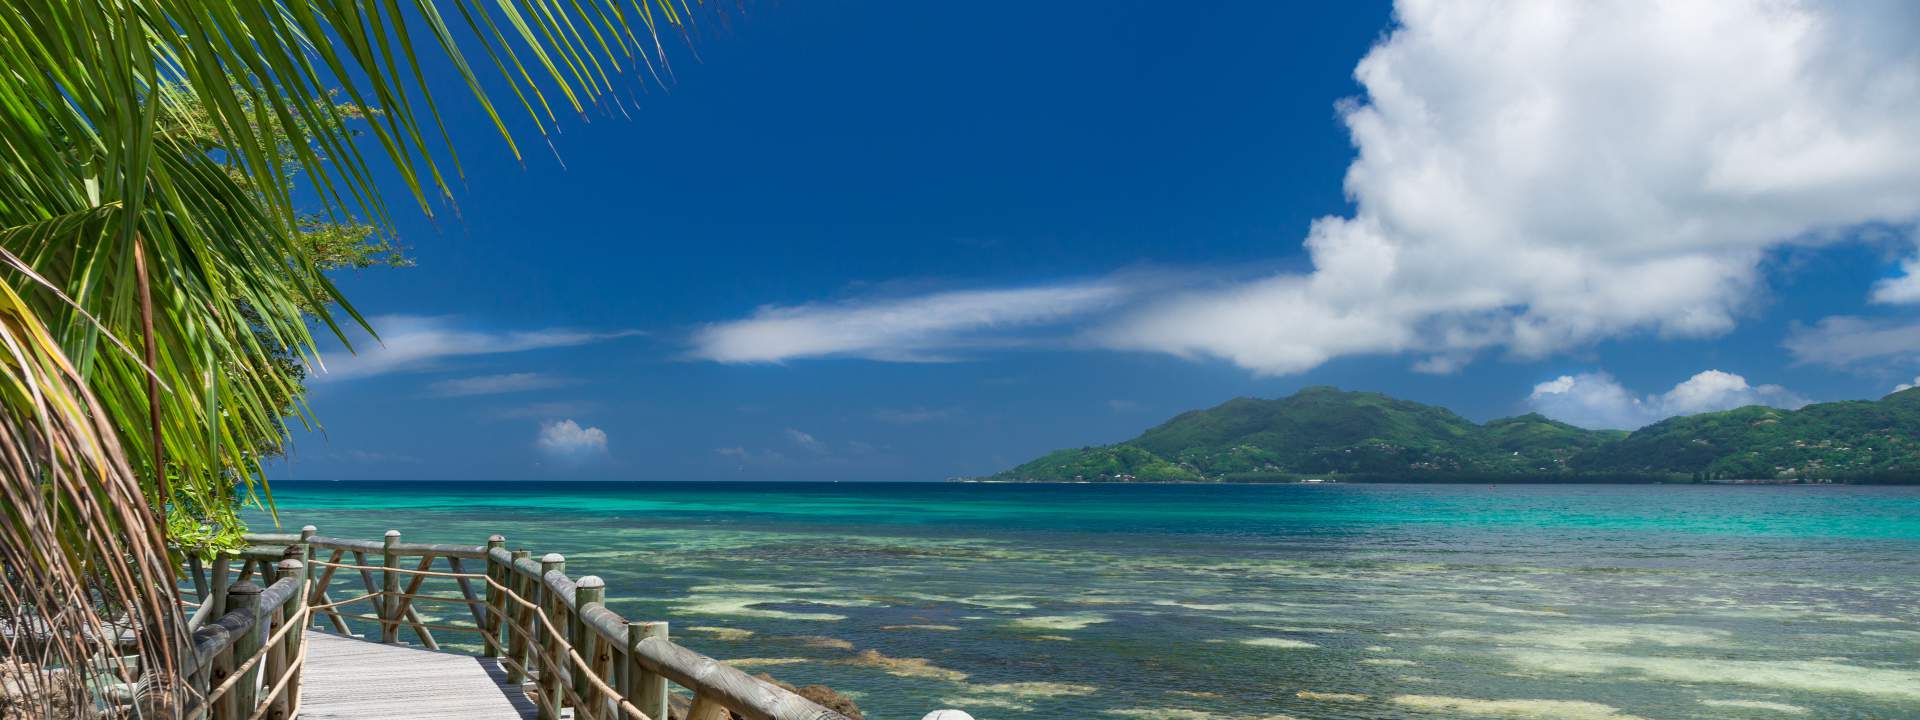 Der Mini-Kabinencharter zum Paradies: Kurs auf die Inselwelt der Seychellen!